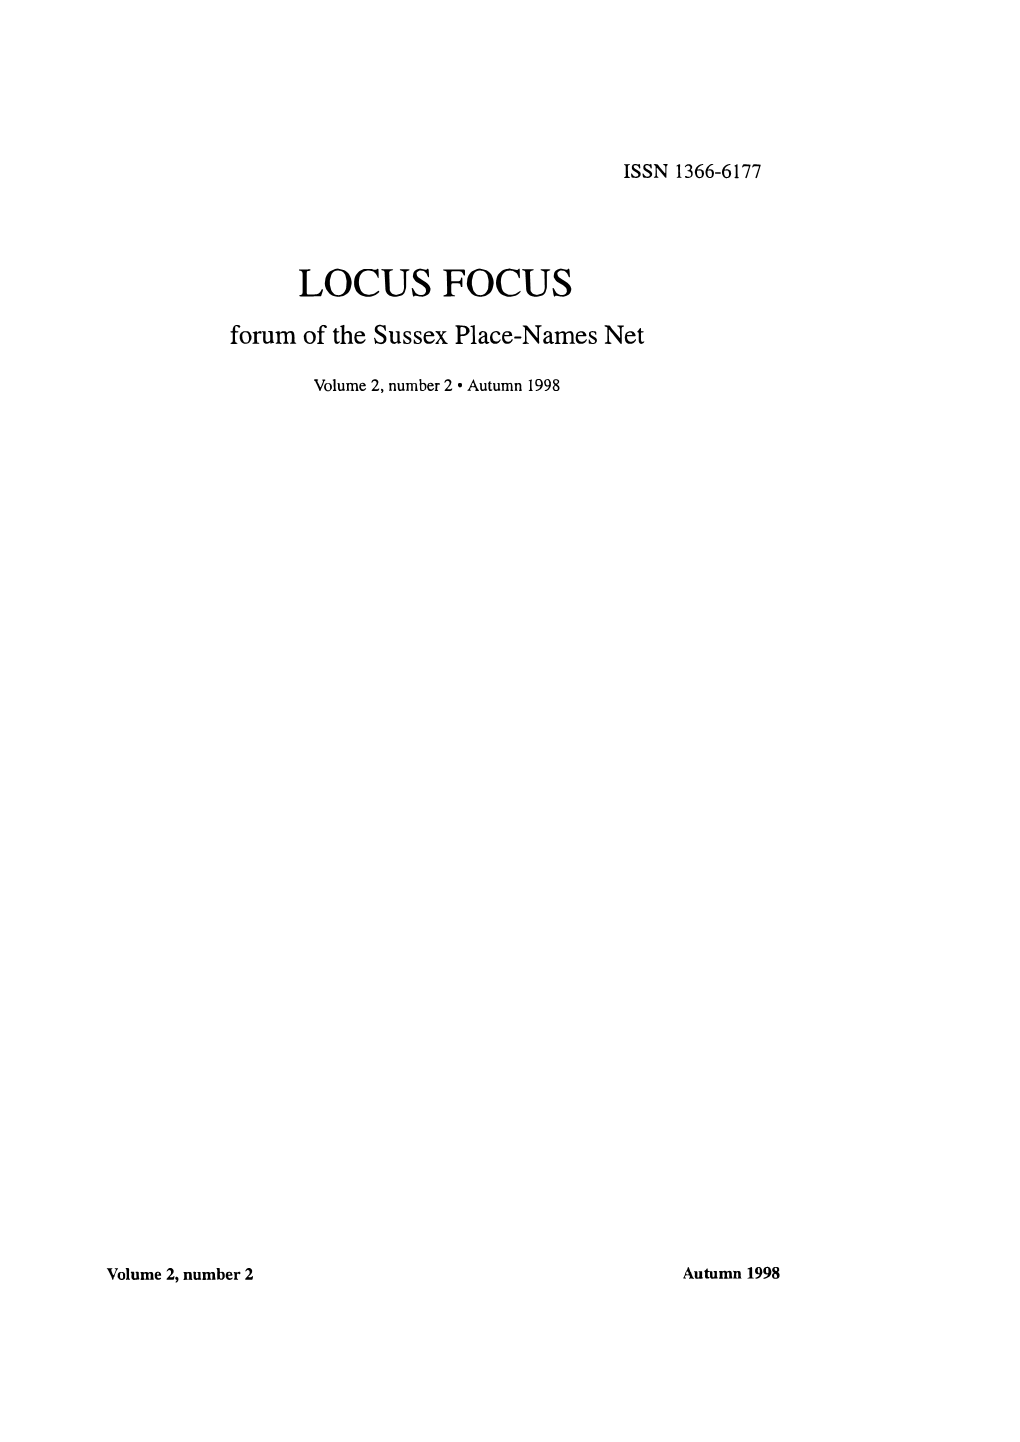 LOCUS FOCUS Forumof the Sussex Place-Names Net